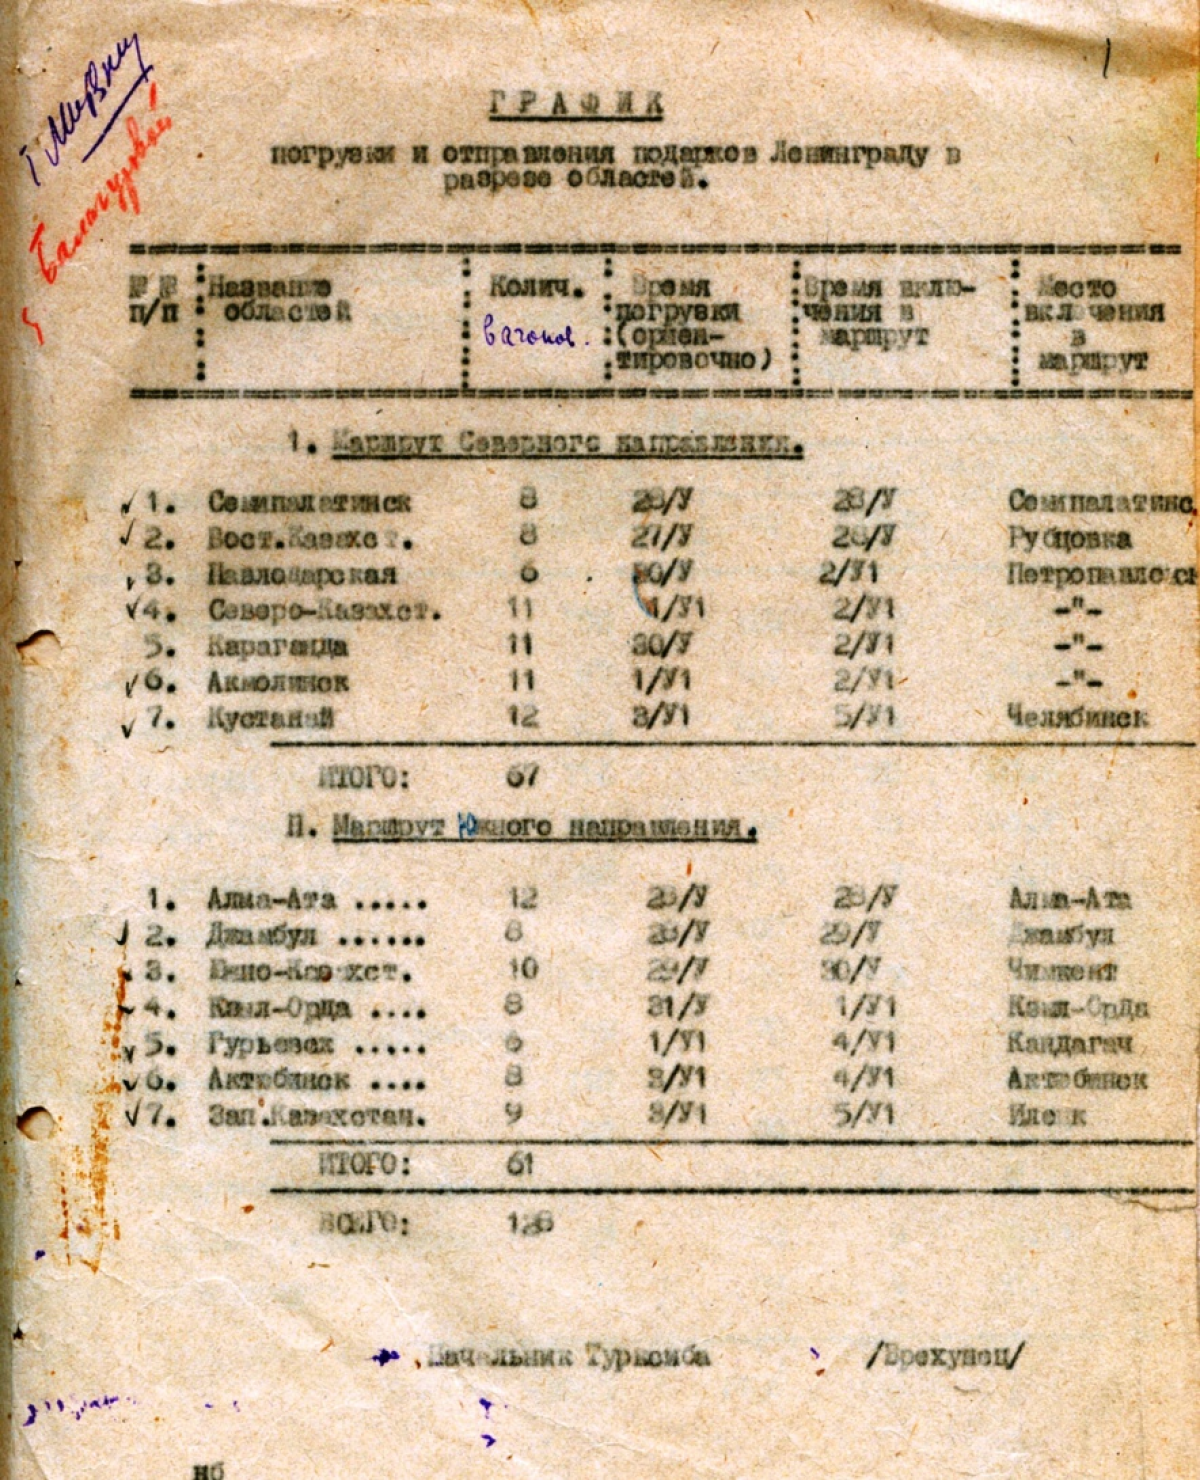 Қазақстанның блокада құрсауында қалған Ленинградқа берген көмегі  - e-history.kz